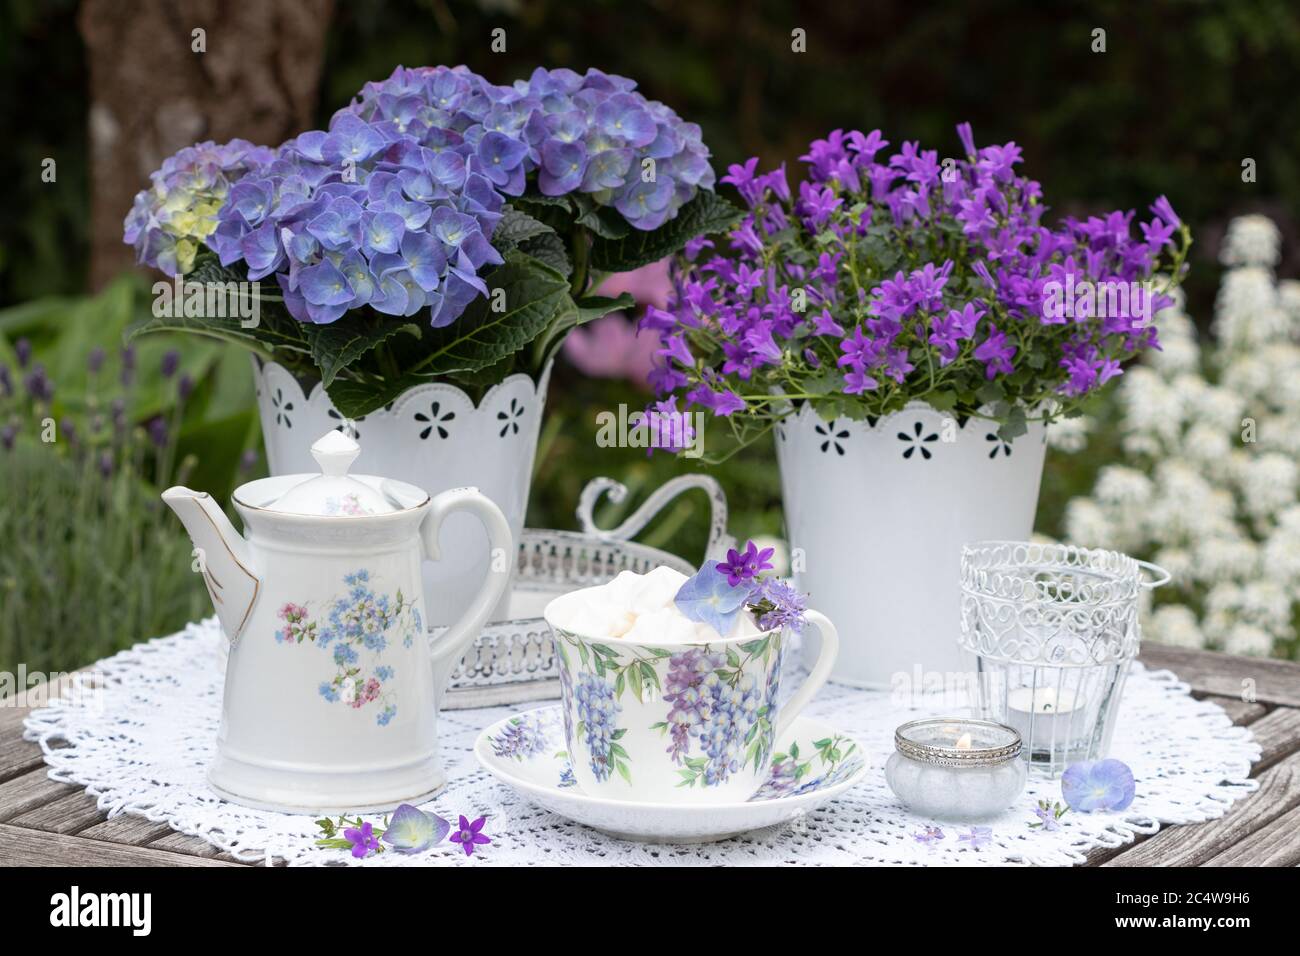 Tischdekoration mit Porzellan mit floralem Ornament und lila Blüten Stockfoto